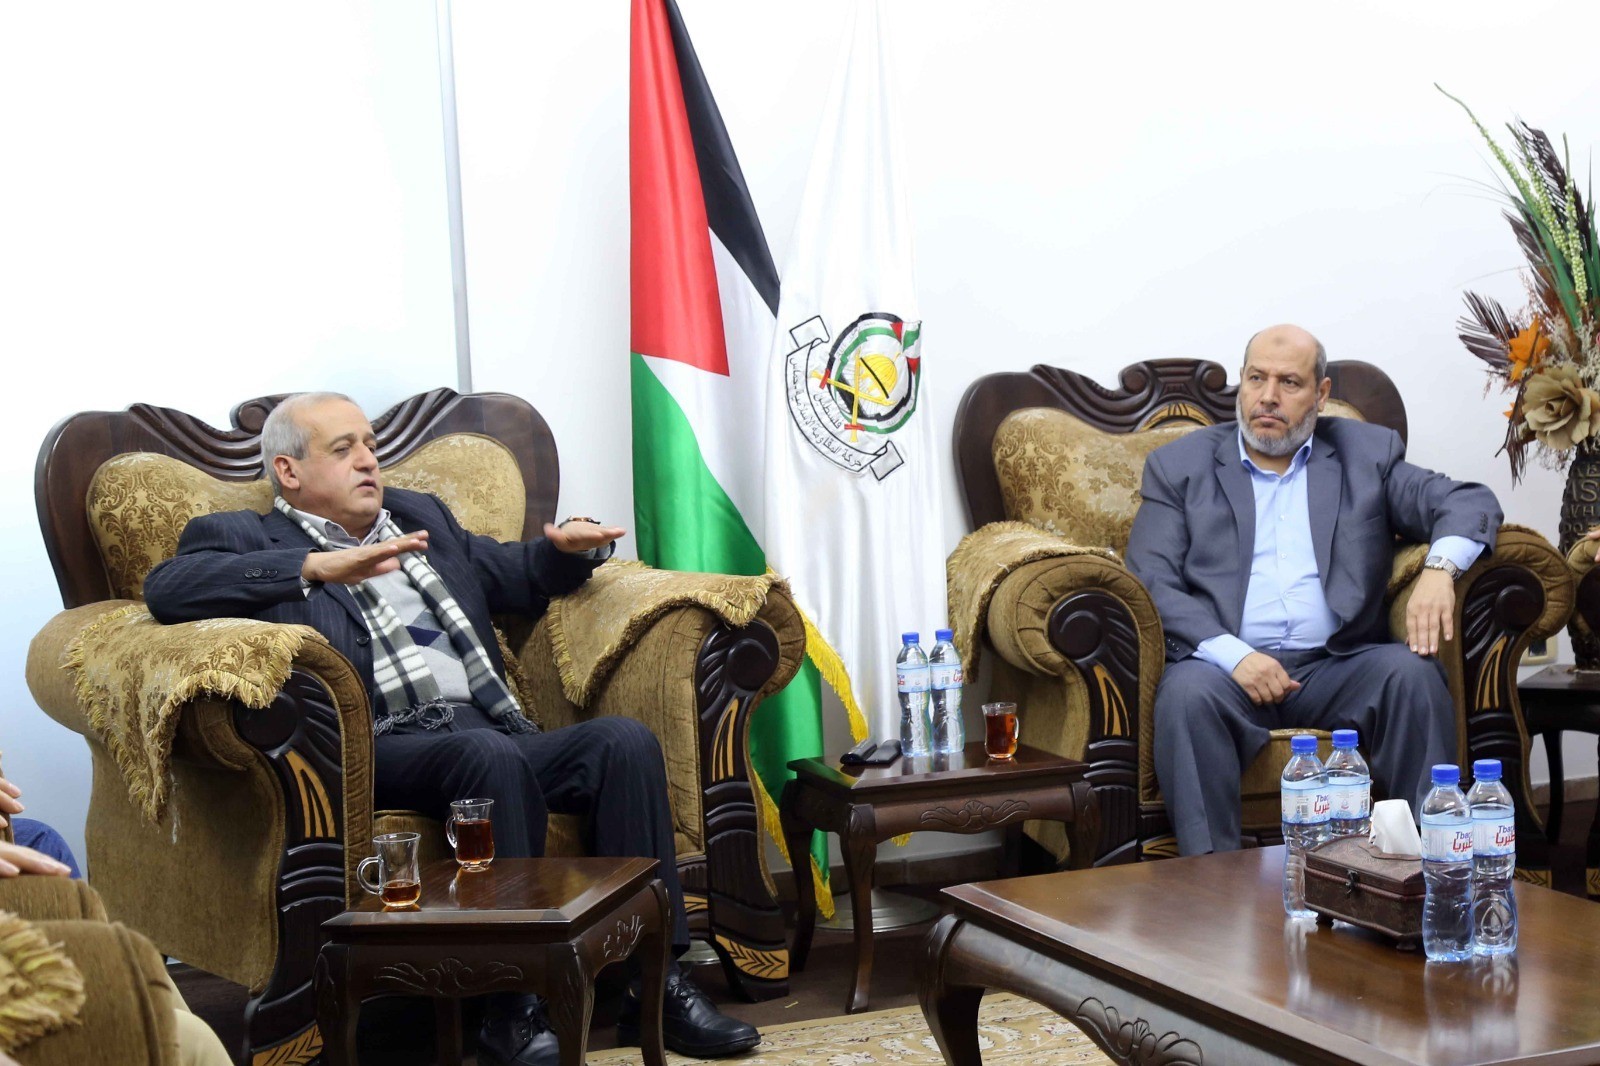 وفد من حركة حماس يلتقي بوفد من الجبهة الشعبية في غزة